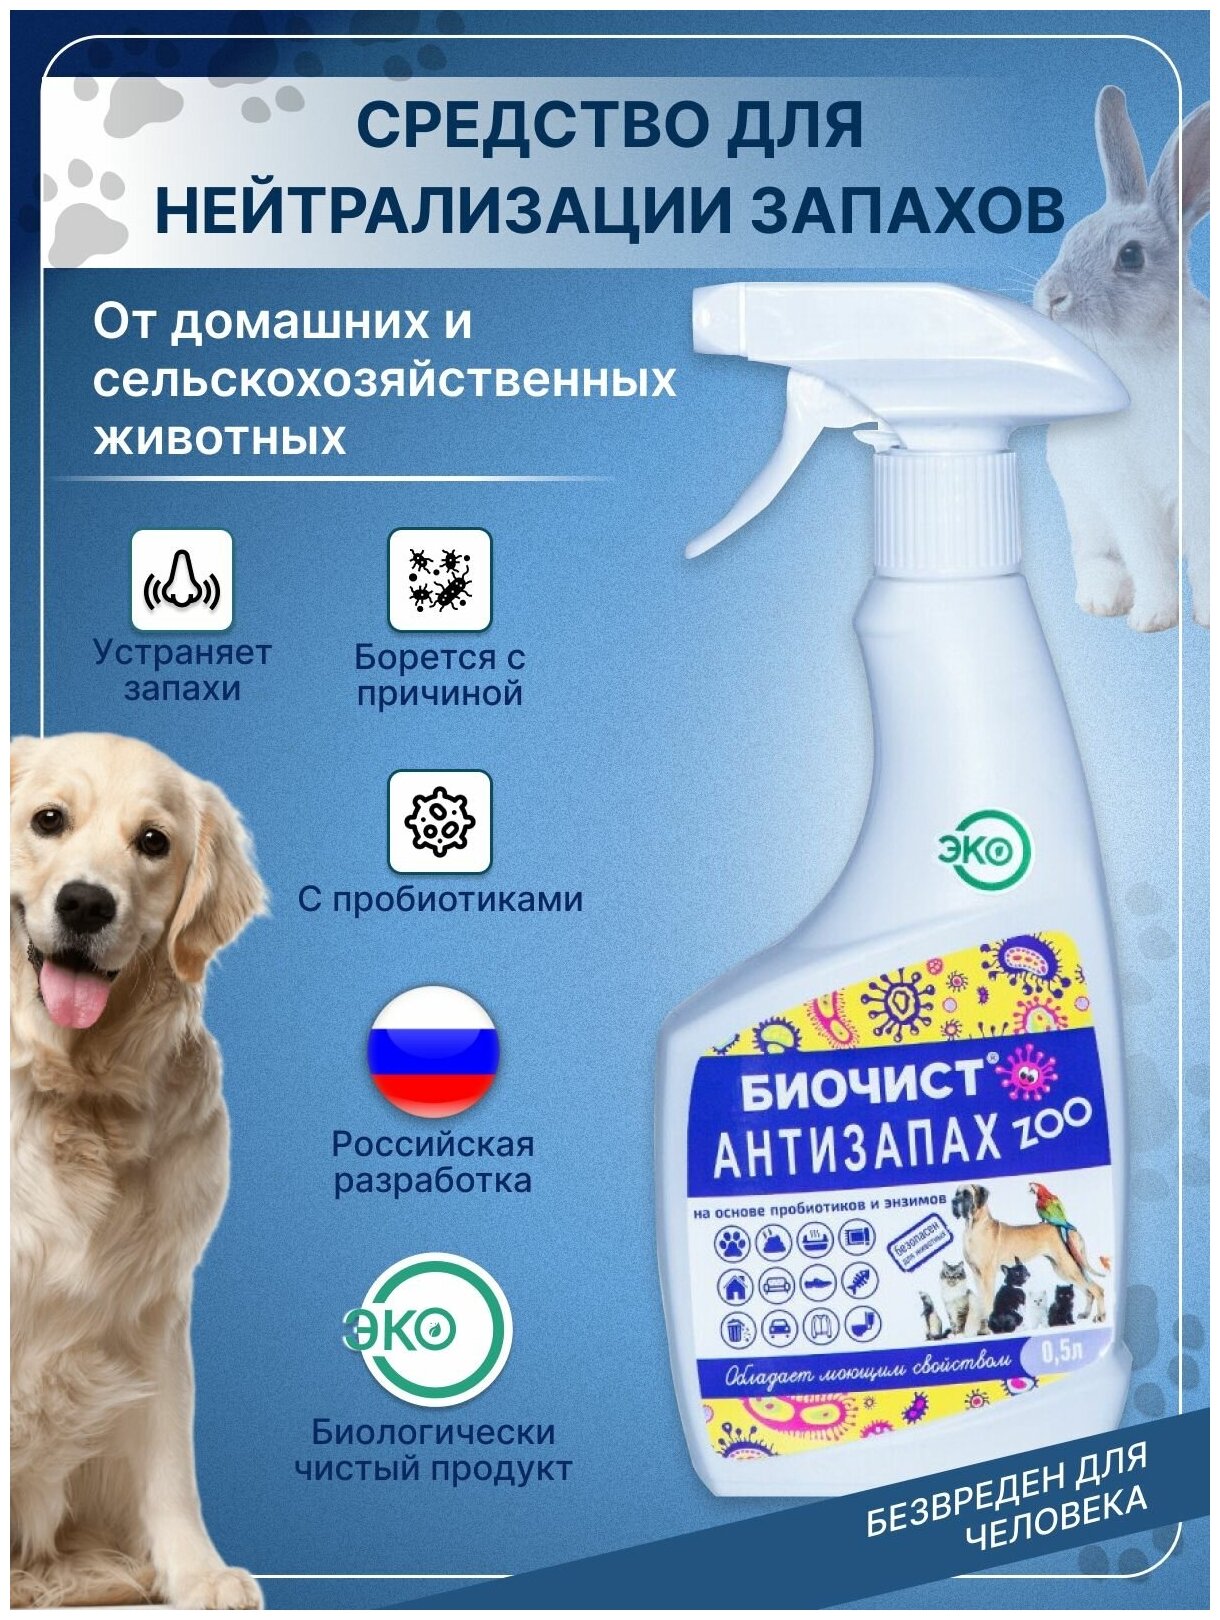 Спрей для удаления неприятных запахов и меток для собак Антизапах Zoo 500 мл.